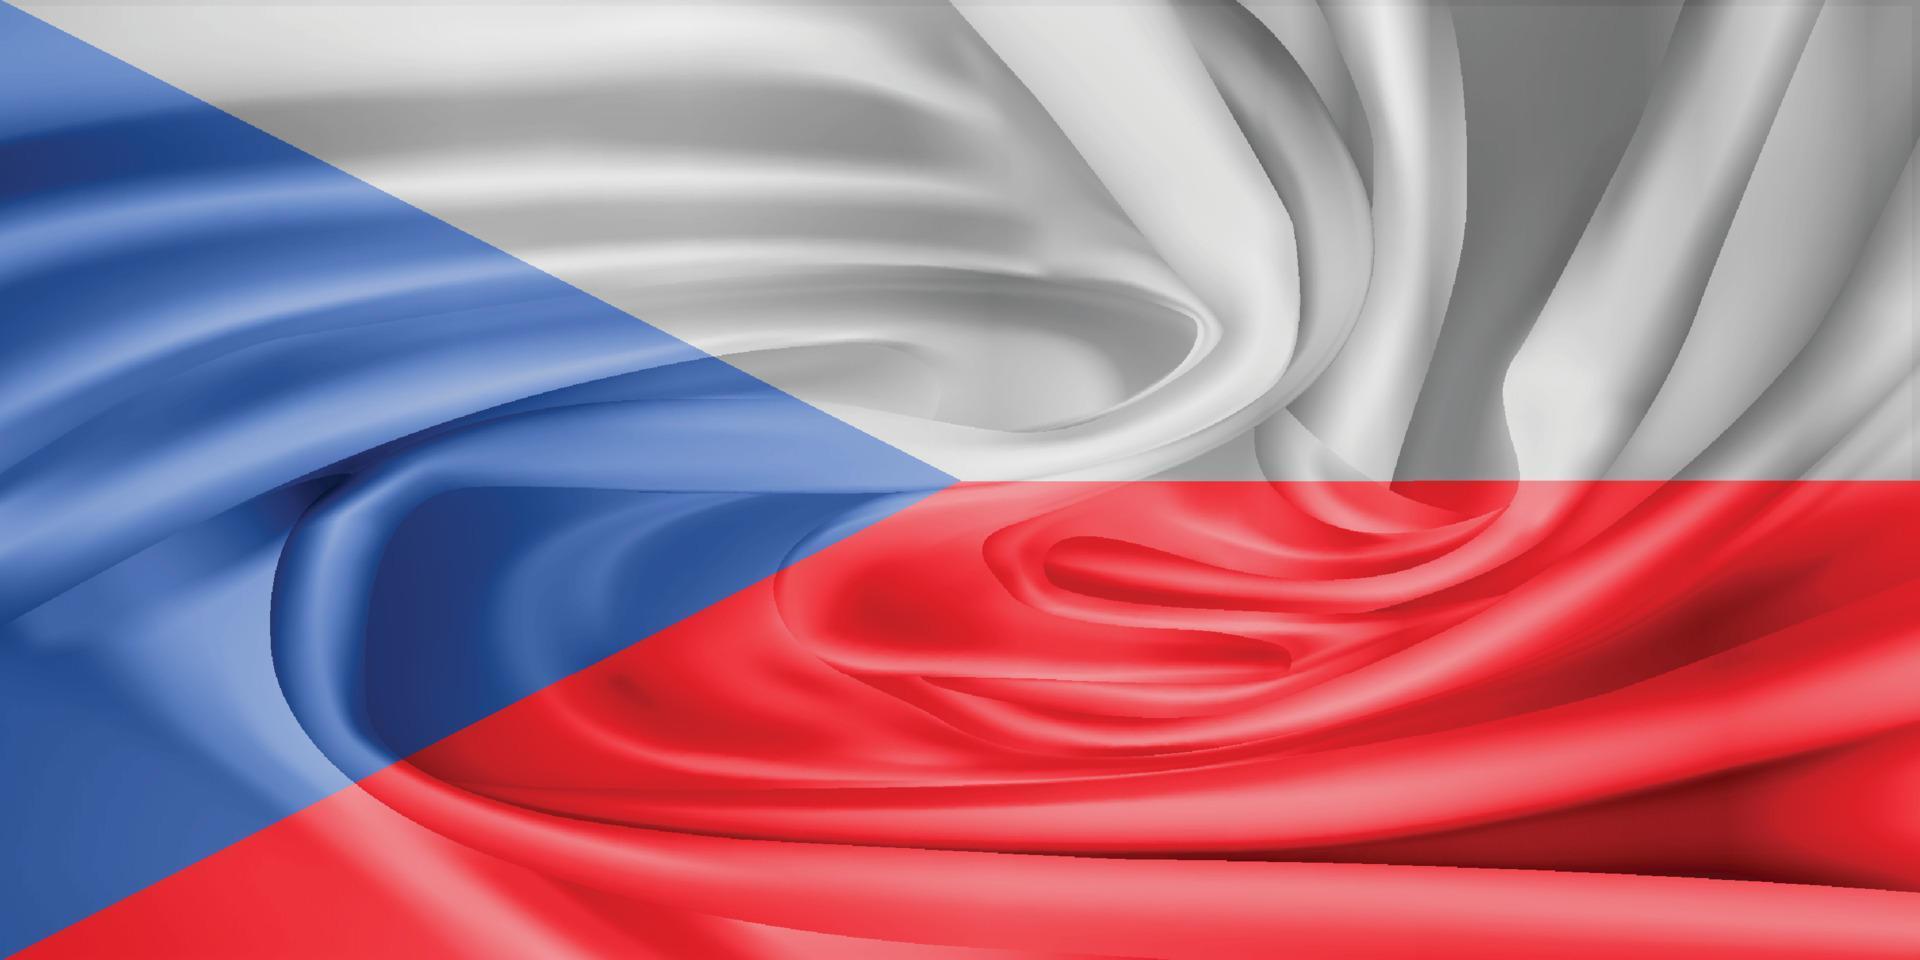 la bandiera nazionale.il simbolo dello stato su tessuto di cotone ondulato. illustrazione vettoriale realistico.sfondo di bandiera con trama di stoffa